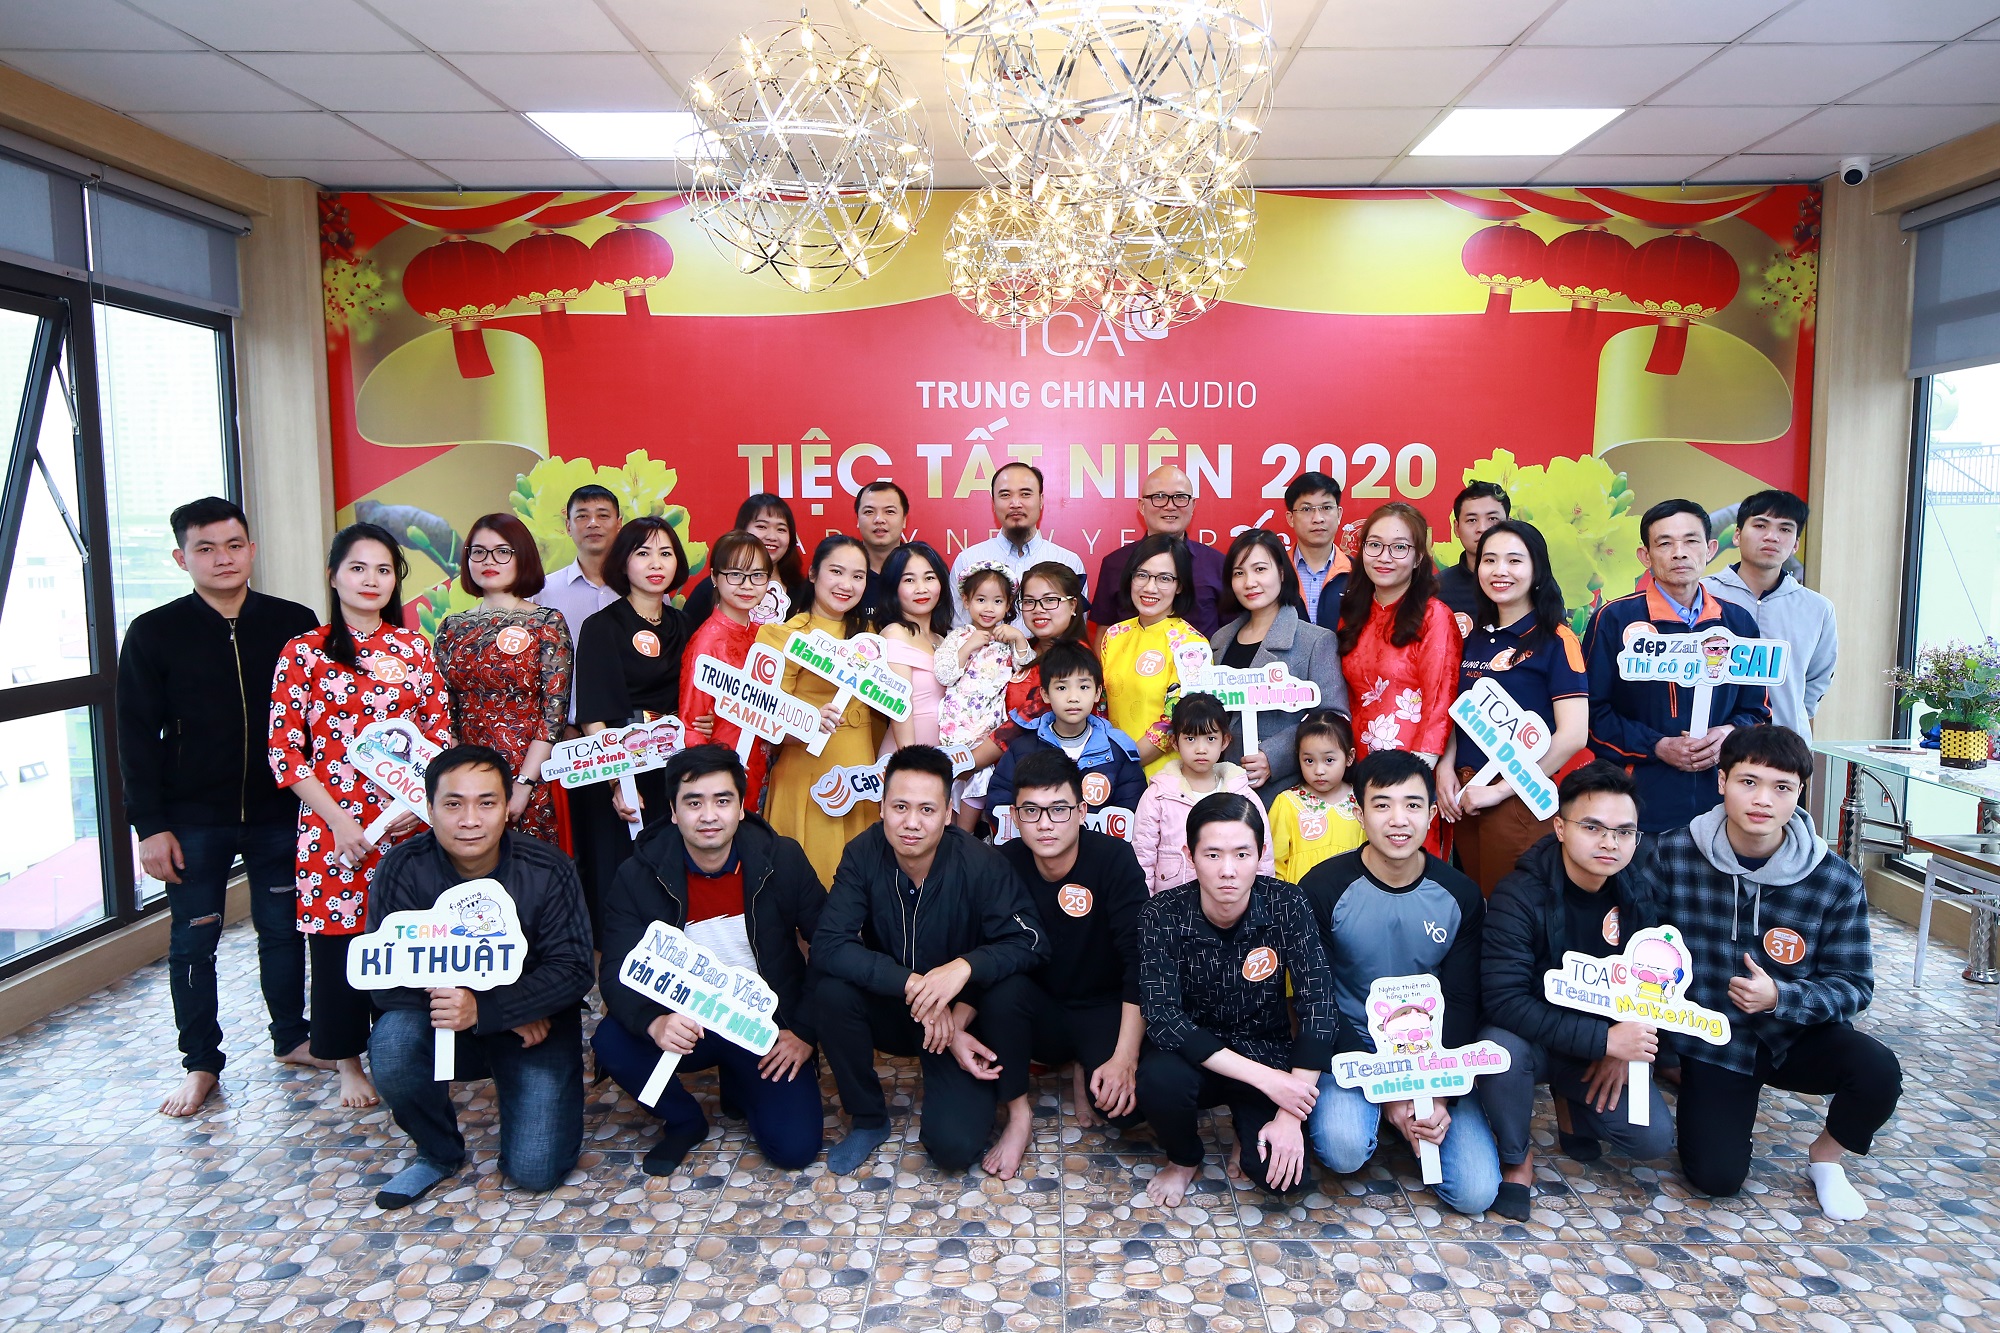 Tiệc tất niên 2020 tại Hà Nội